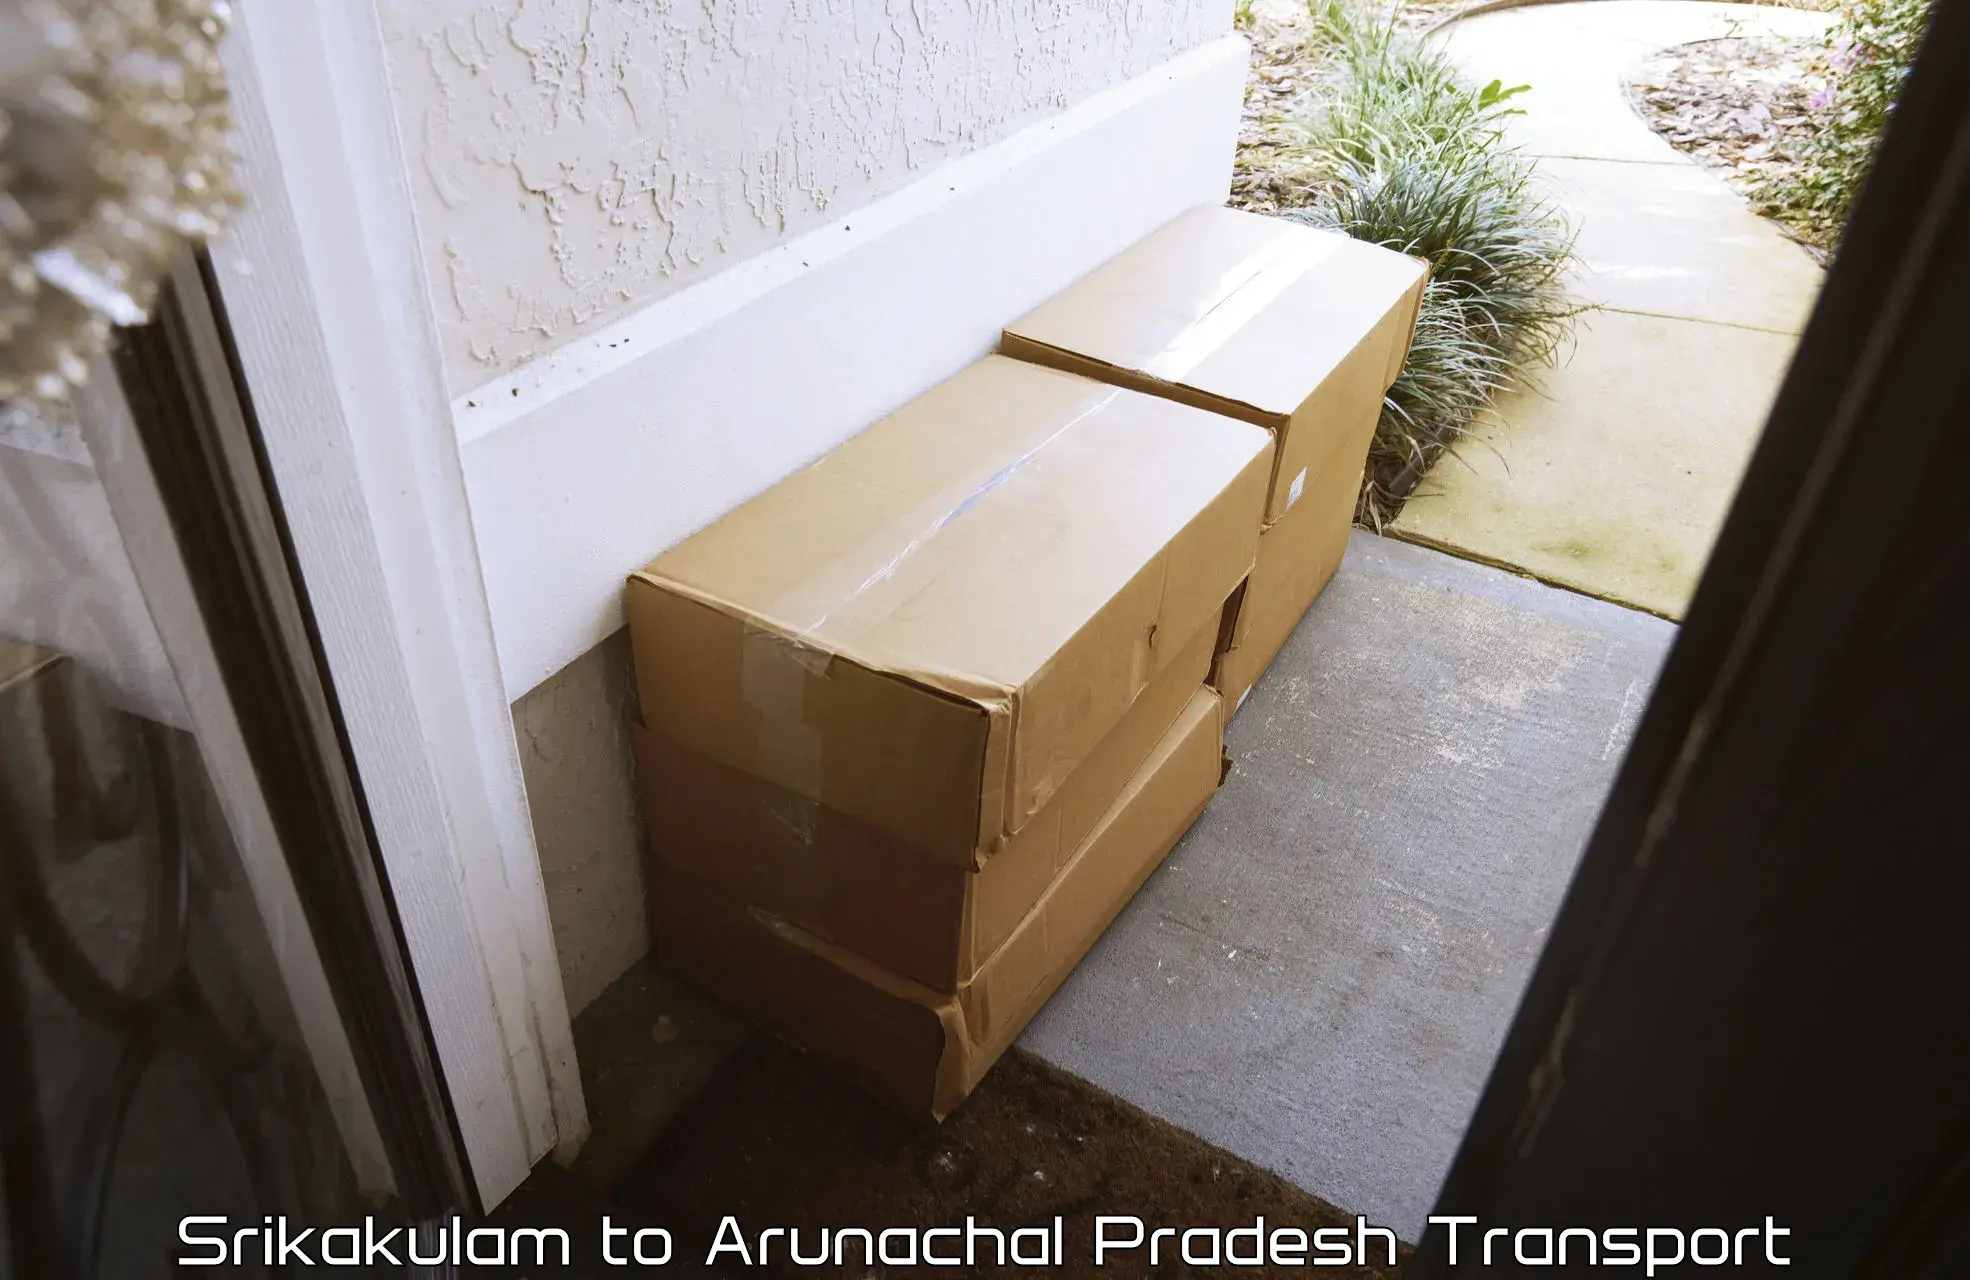 Sending bike to another city Srikakulam to Arunachal Pradesh